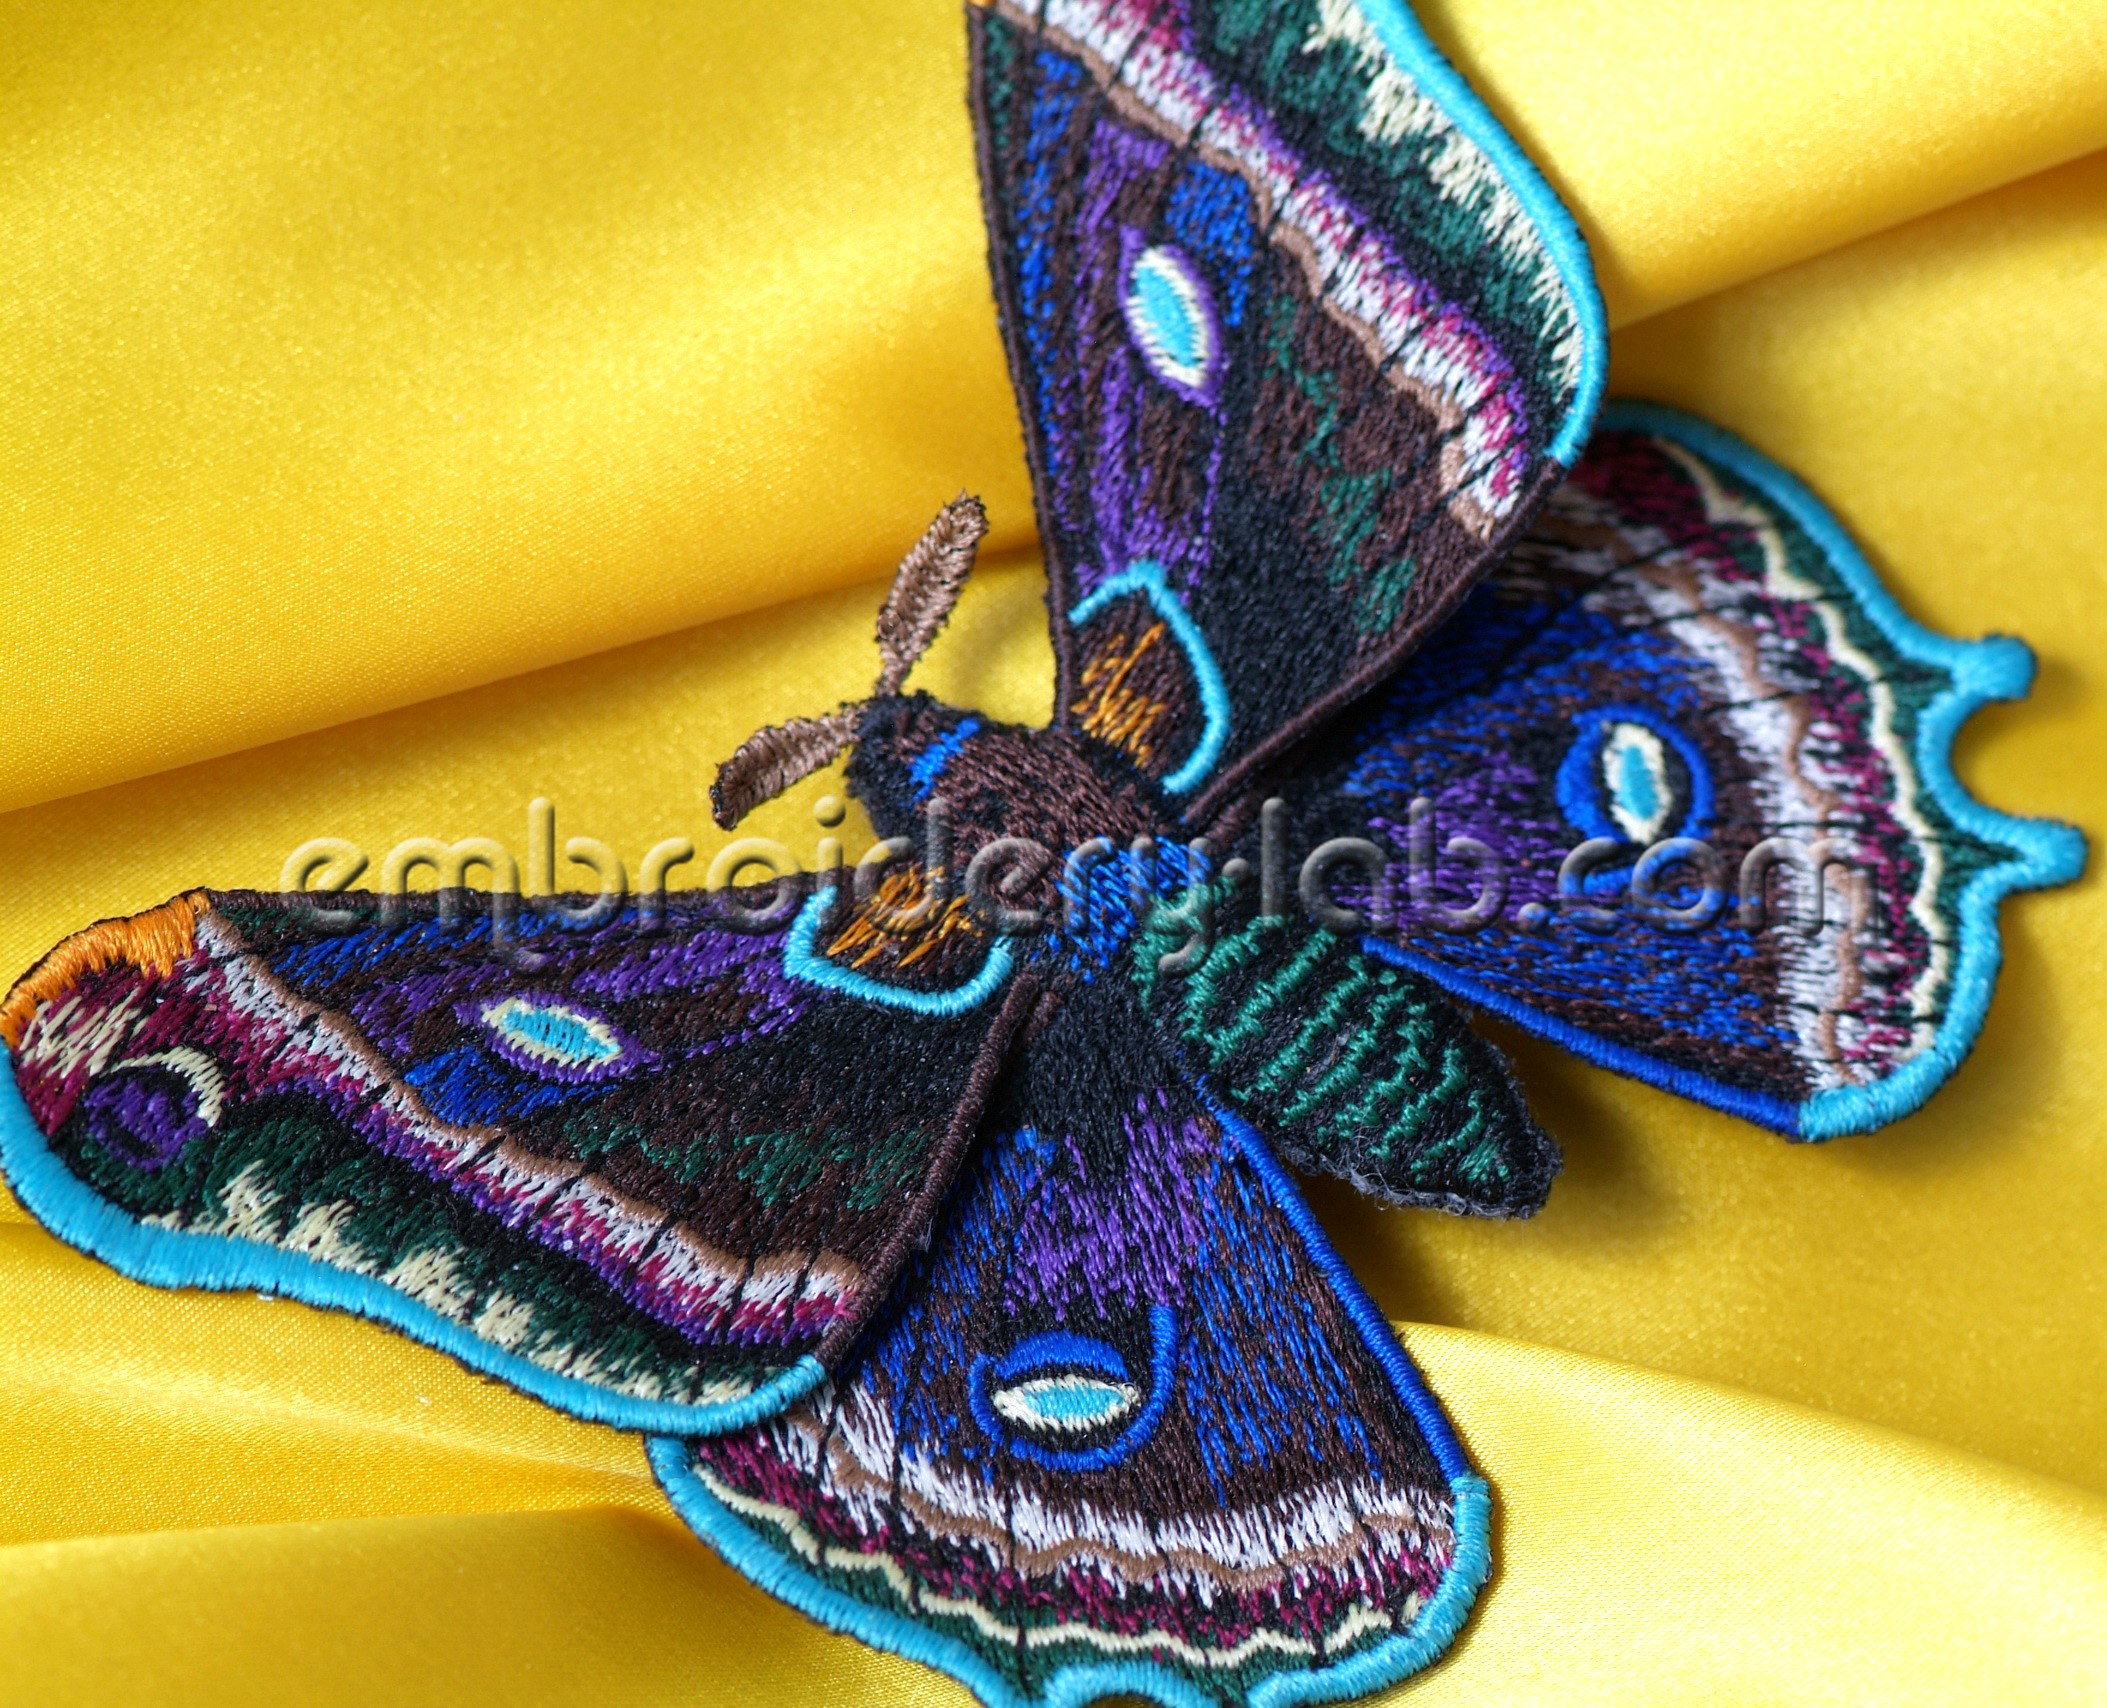 Butterfly 0006 3D